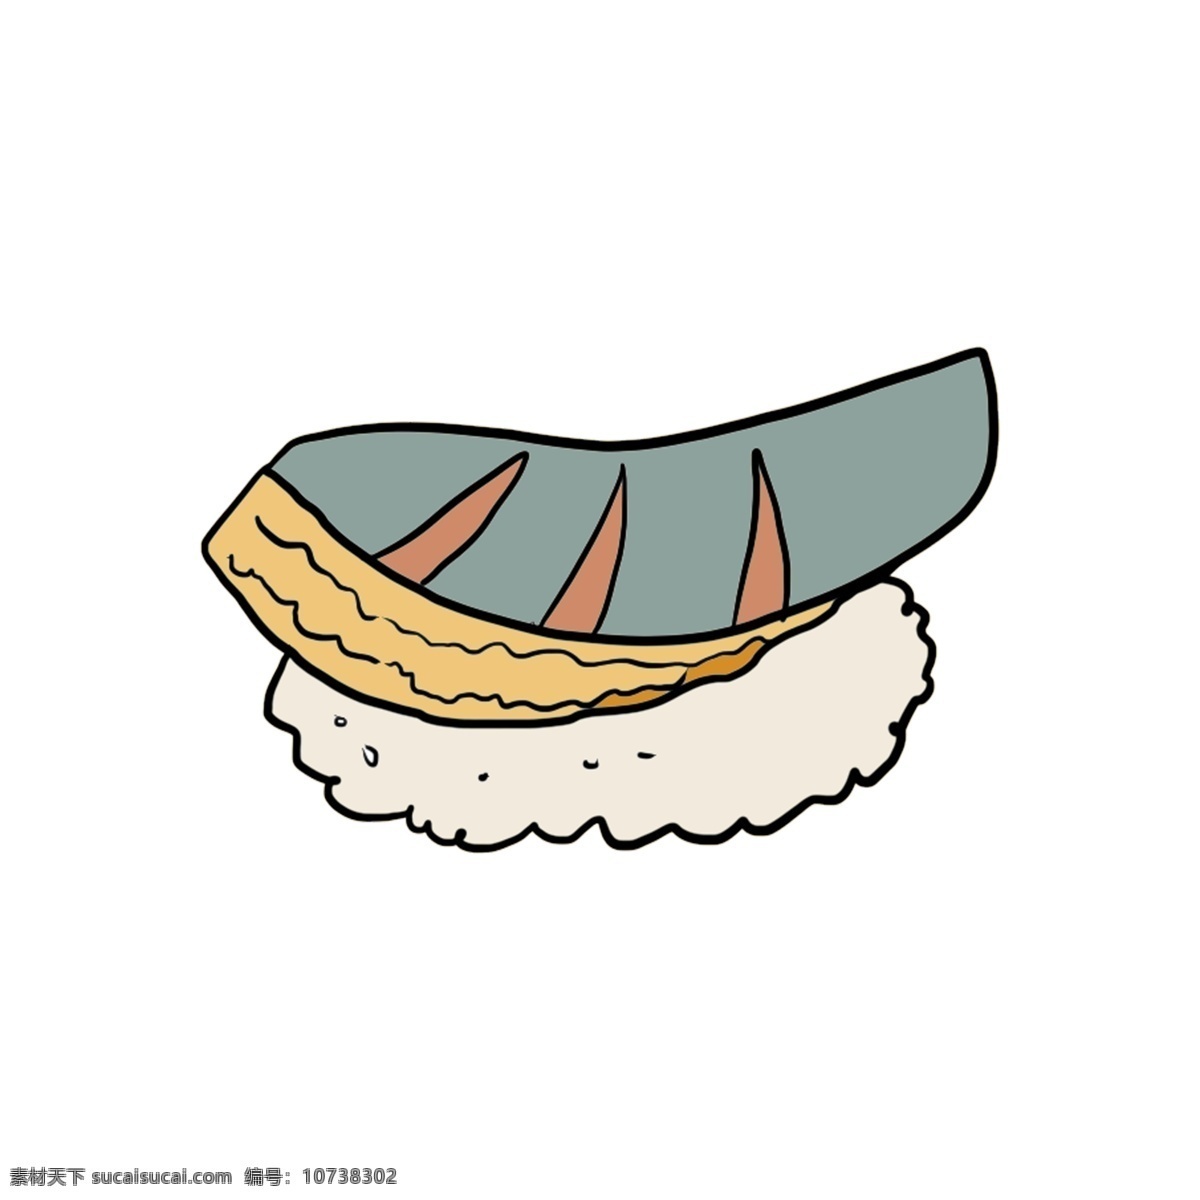 好吃 日本 寿司 插图 日本寿司 好吃的寿司 肉松 萝卜 泡菜 黄瓜 食物 日本寿司插图 美味寿司